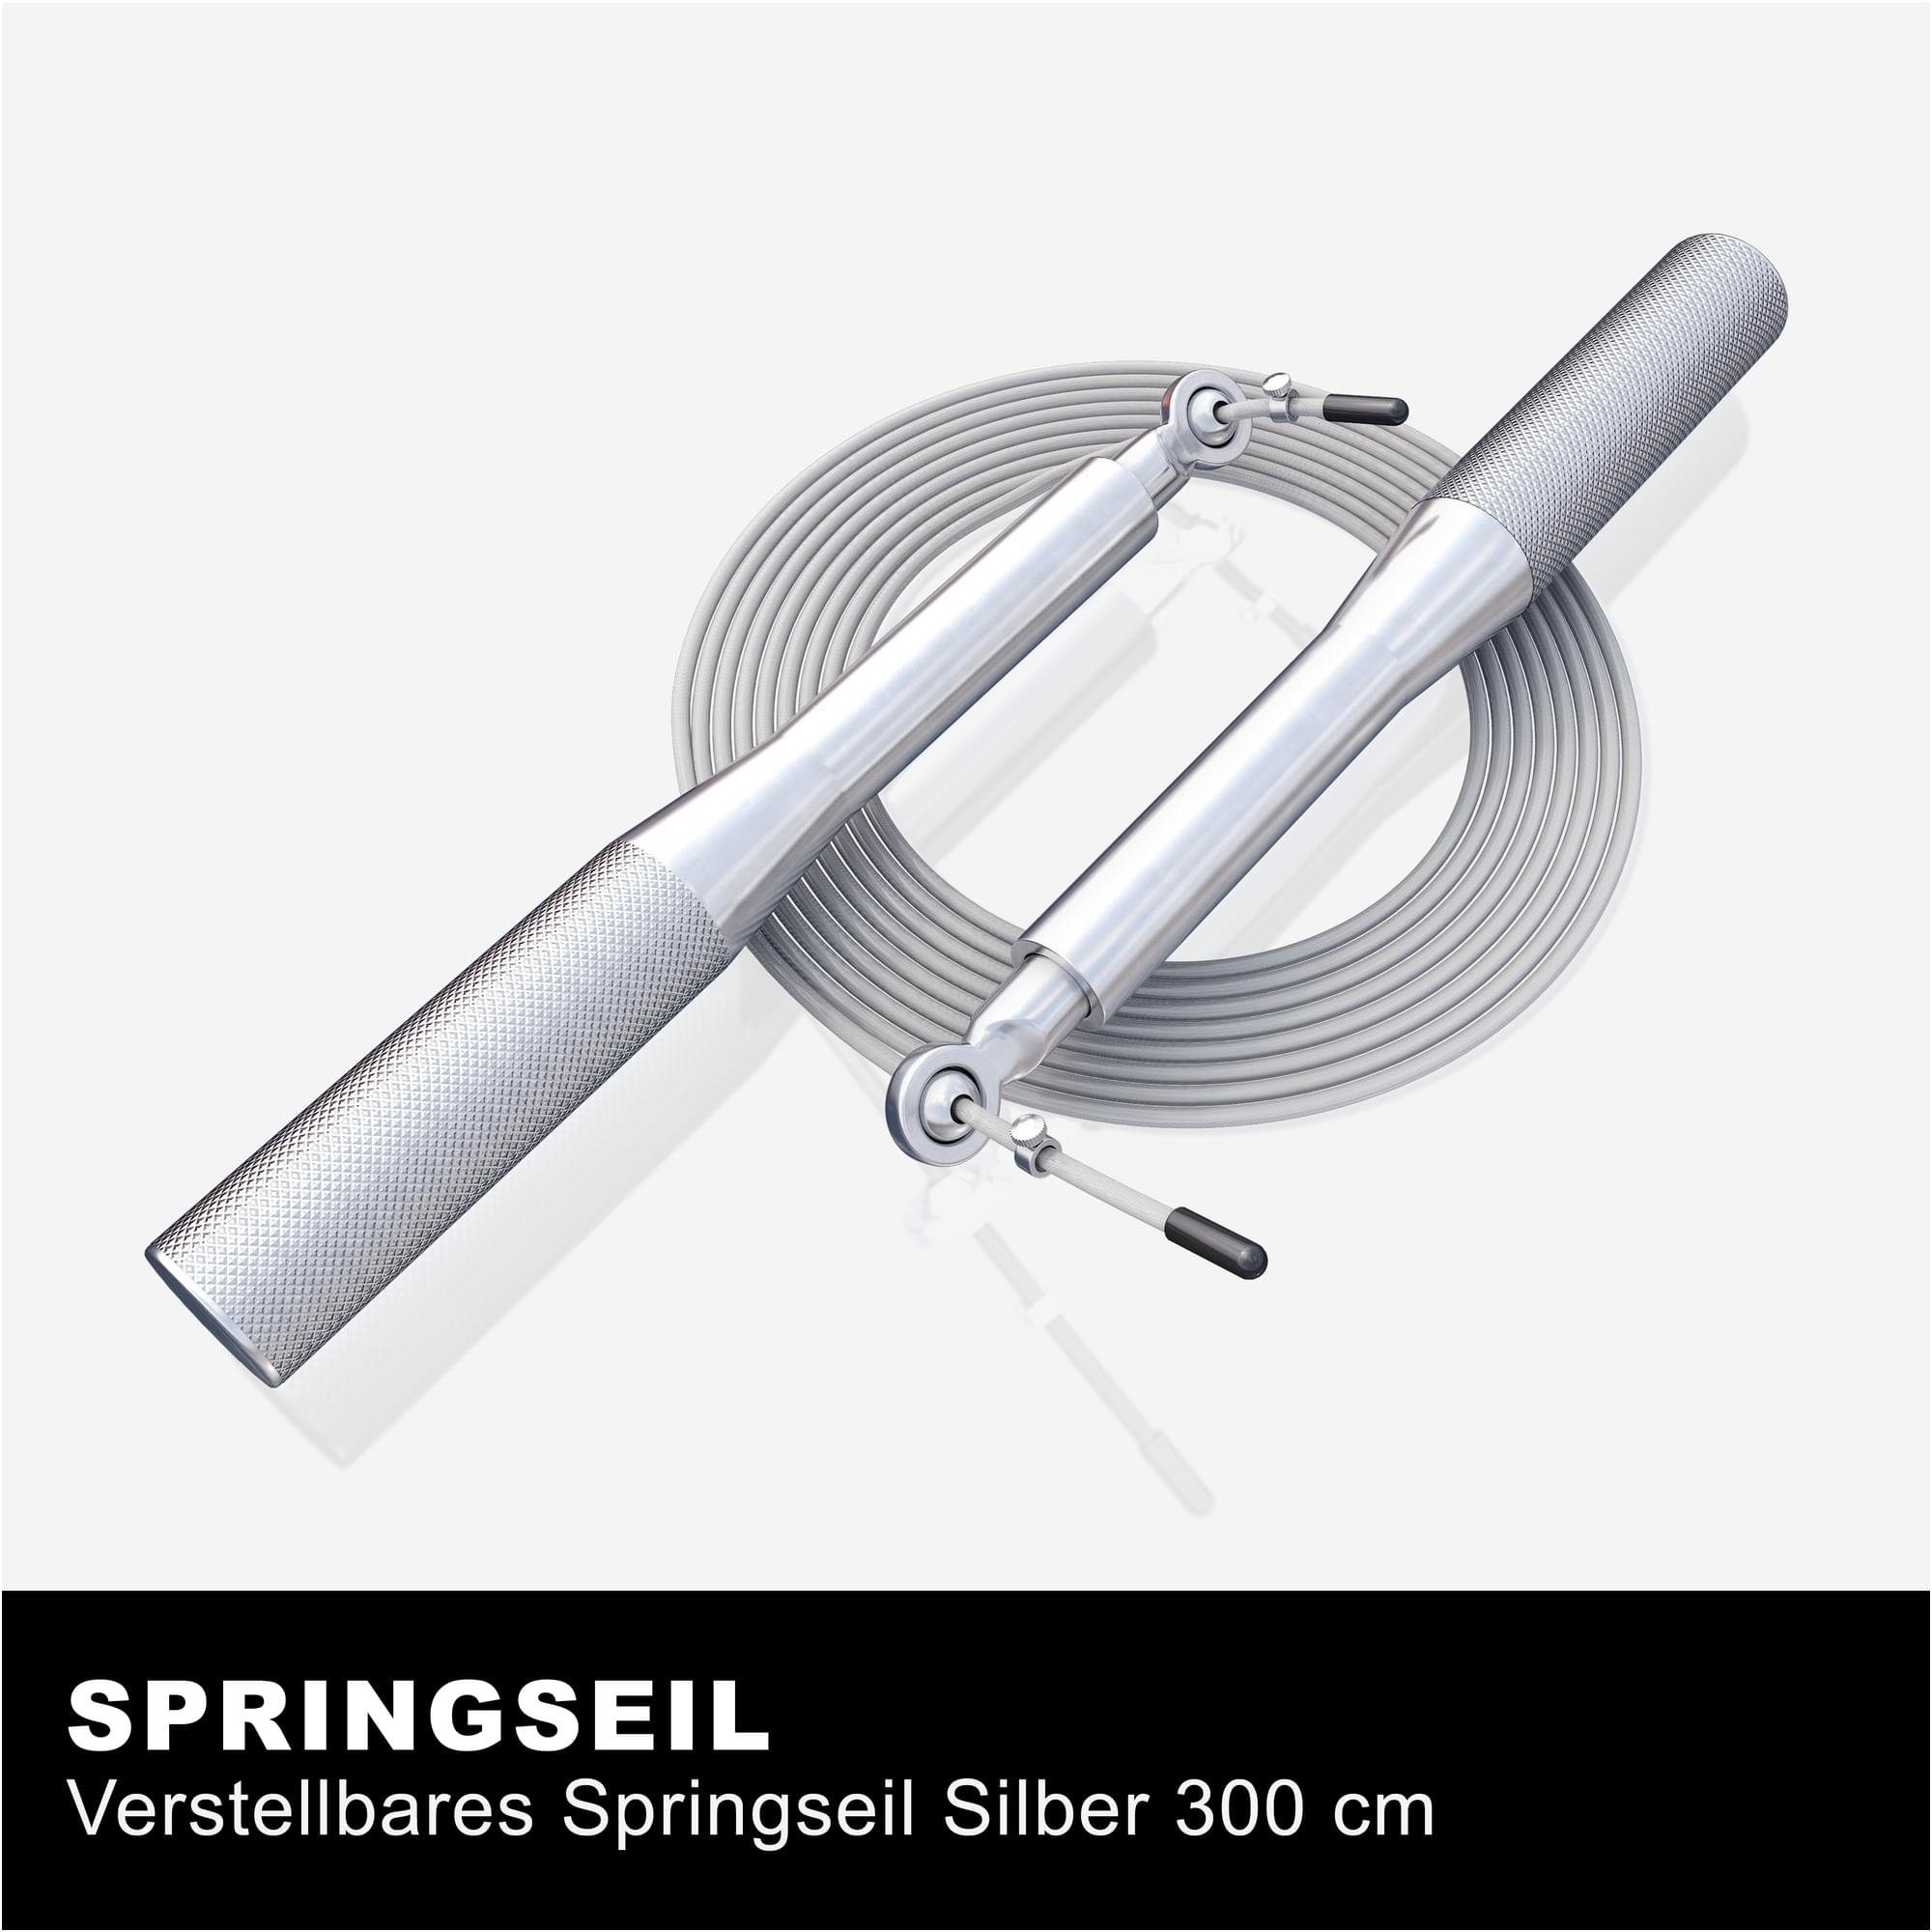 GORILLA SPORTS Springseil Speed Rope Jump, - Verstellbar, - Rutschfeste Sprungseil Silber Skipping, 3m